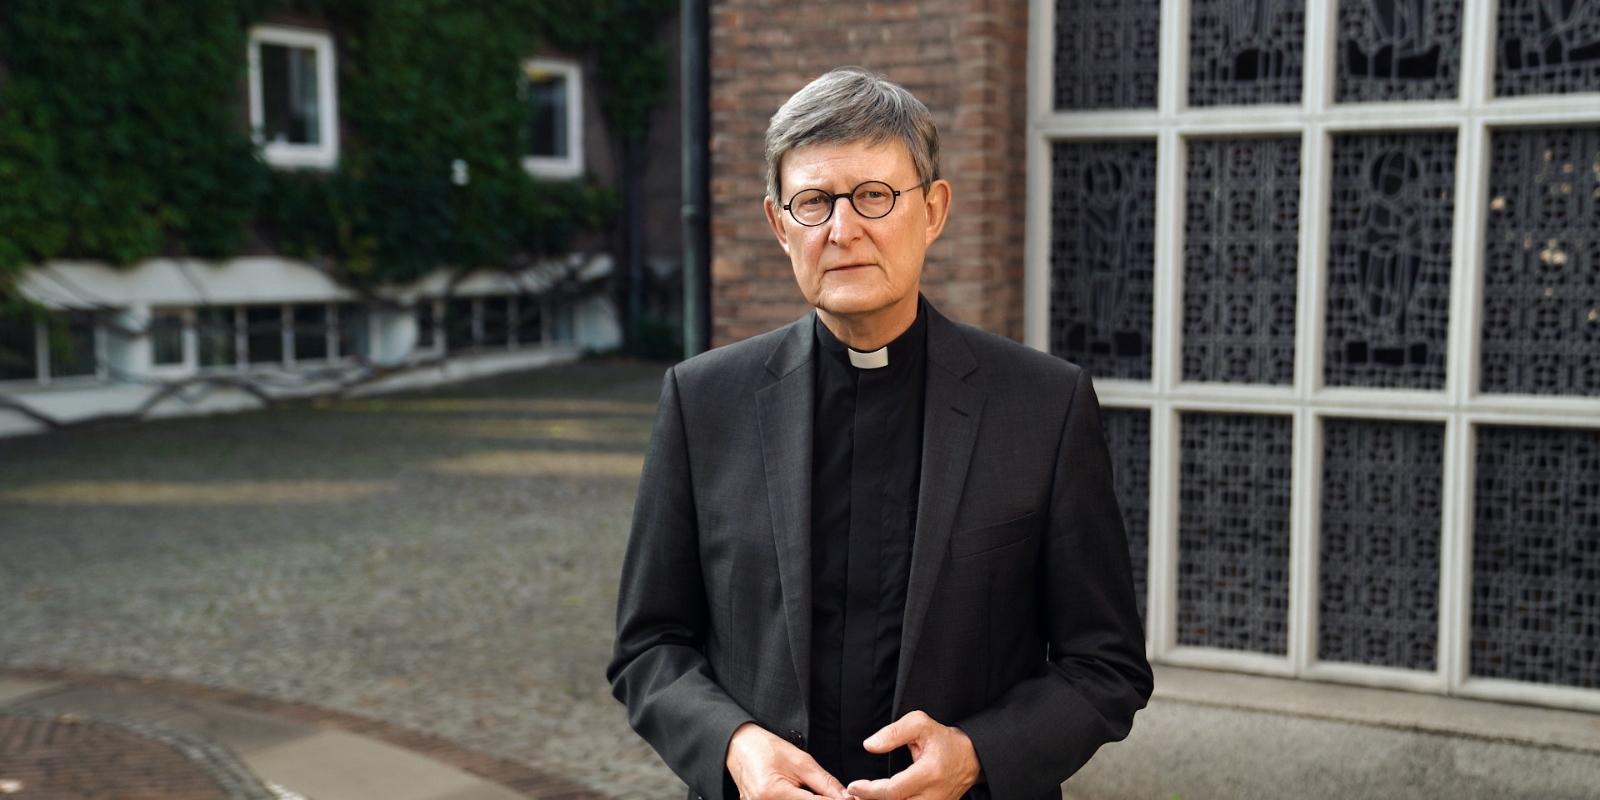 Kardinal Woelki äußert sich zur aktuellen Berichterstattung im Zusammenhang mit der Rücktrittsforderung